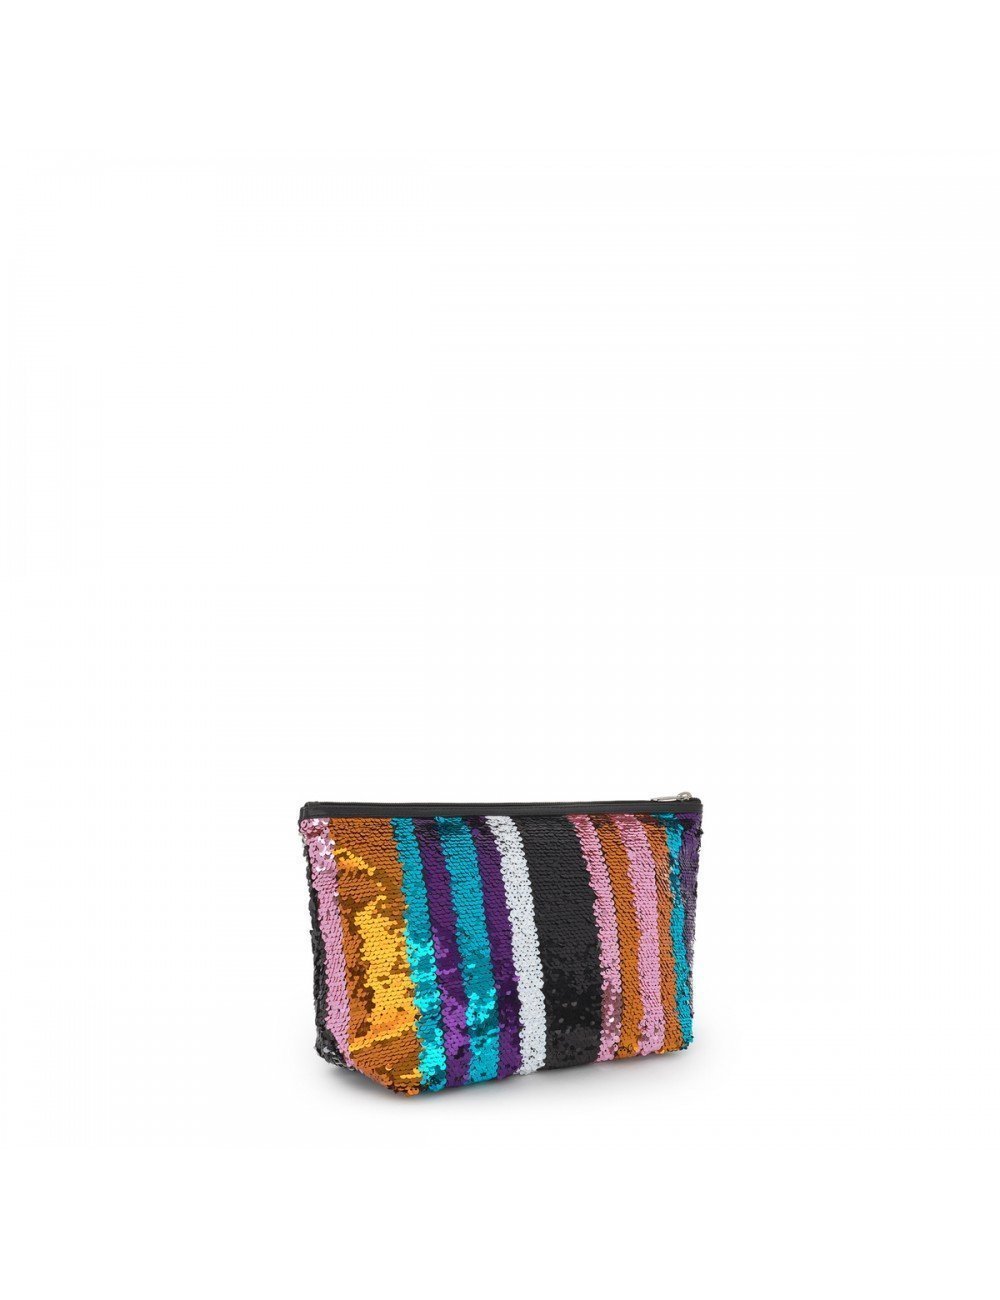 Tous Bolsa Pequeña Kaos Shock Strips Multicolor, últimas ofertas en Complementos de Tous Moda